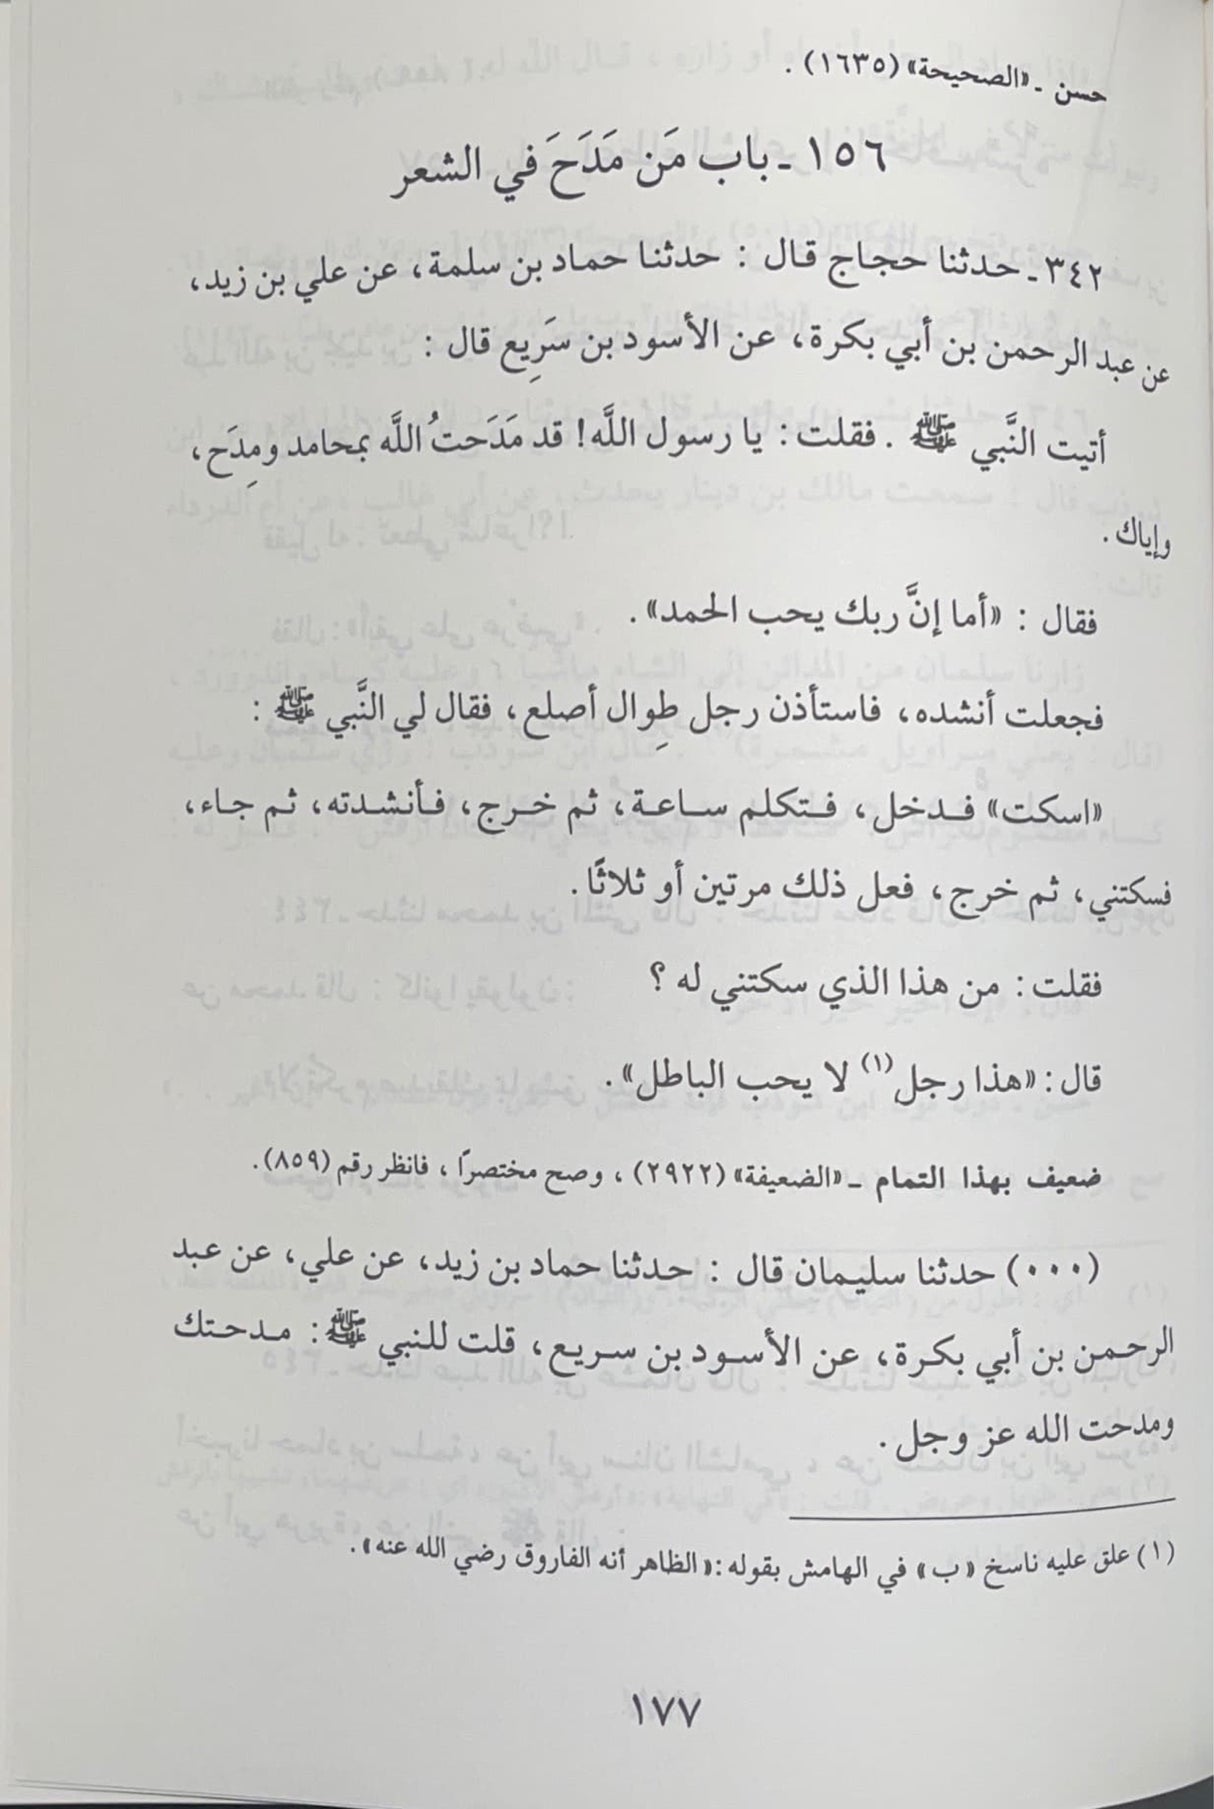 الادب المفرد   Al Adab Al Mufrad (Maarif) (2 Volume Set)